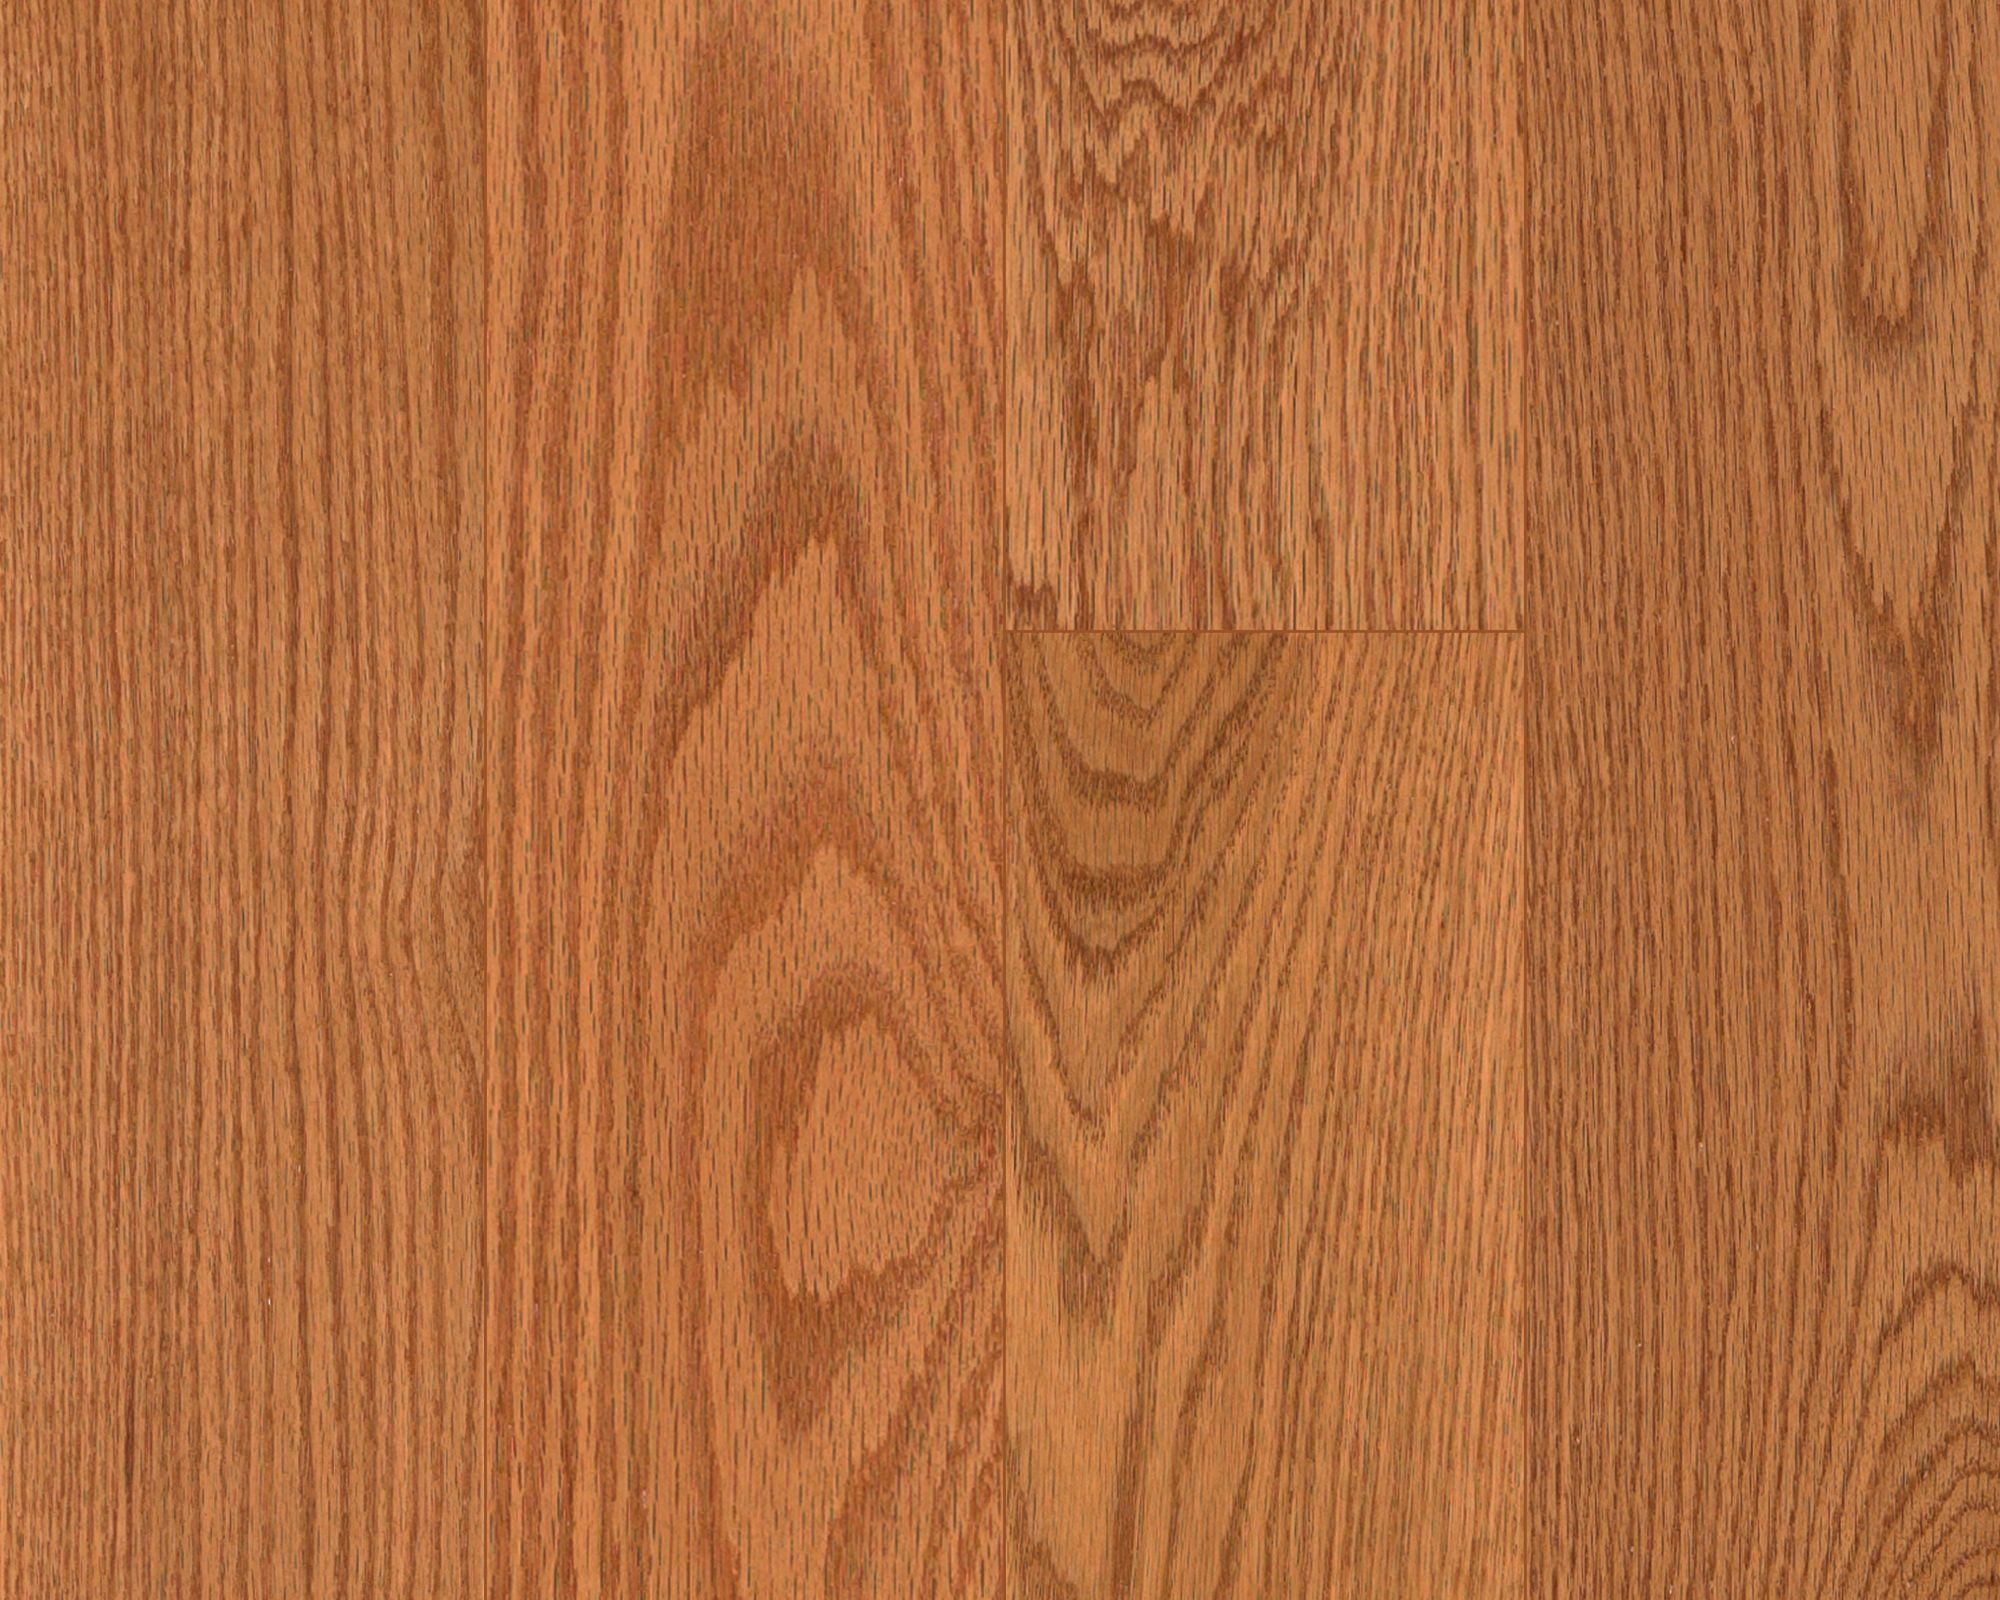 Butterscotch Oak 3 25 Pergo American Era Hardwood Flooring Pergo